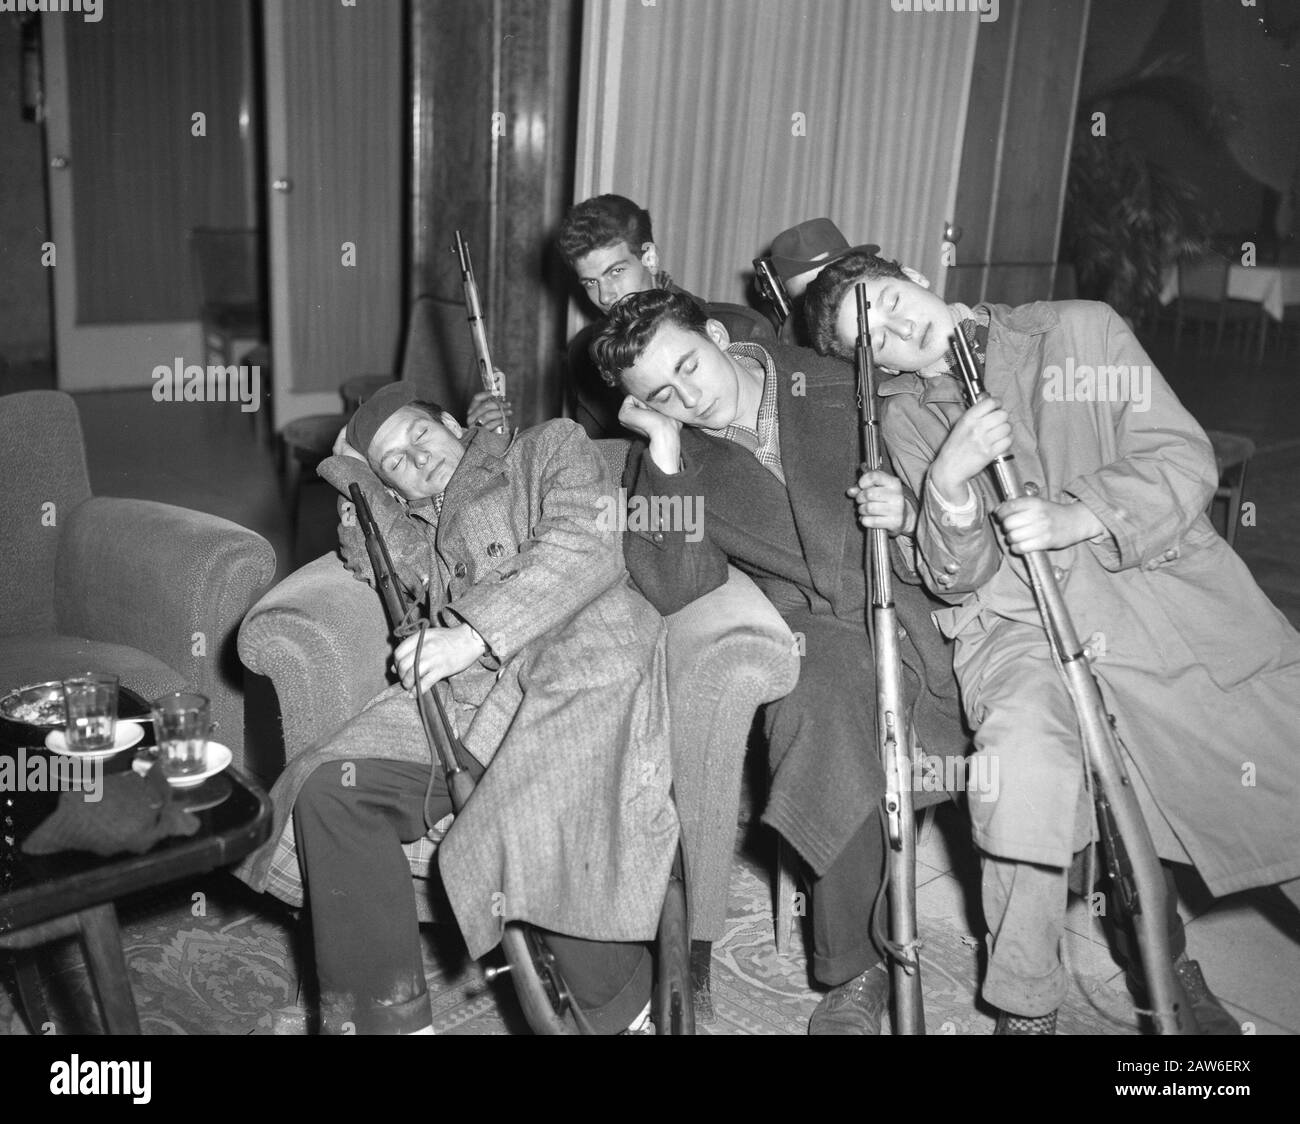 Die neuesten Bilder aus Budapest. Schlafende Widerstandskämpferinnen mit Waffen Datum: 2. November 1956 Ort: Budapest Schlagwörter: Gewehre, Widerstandskämpferinnen Stockfoto